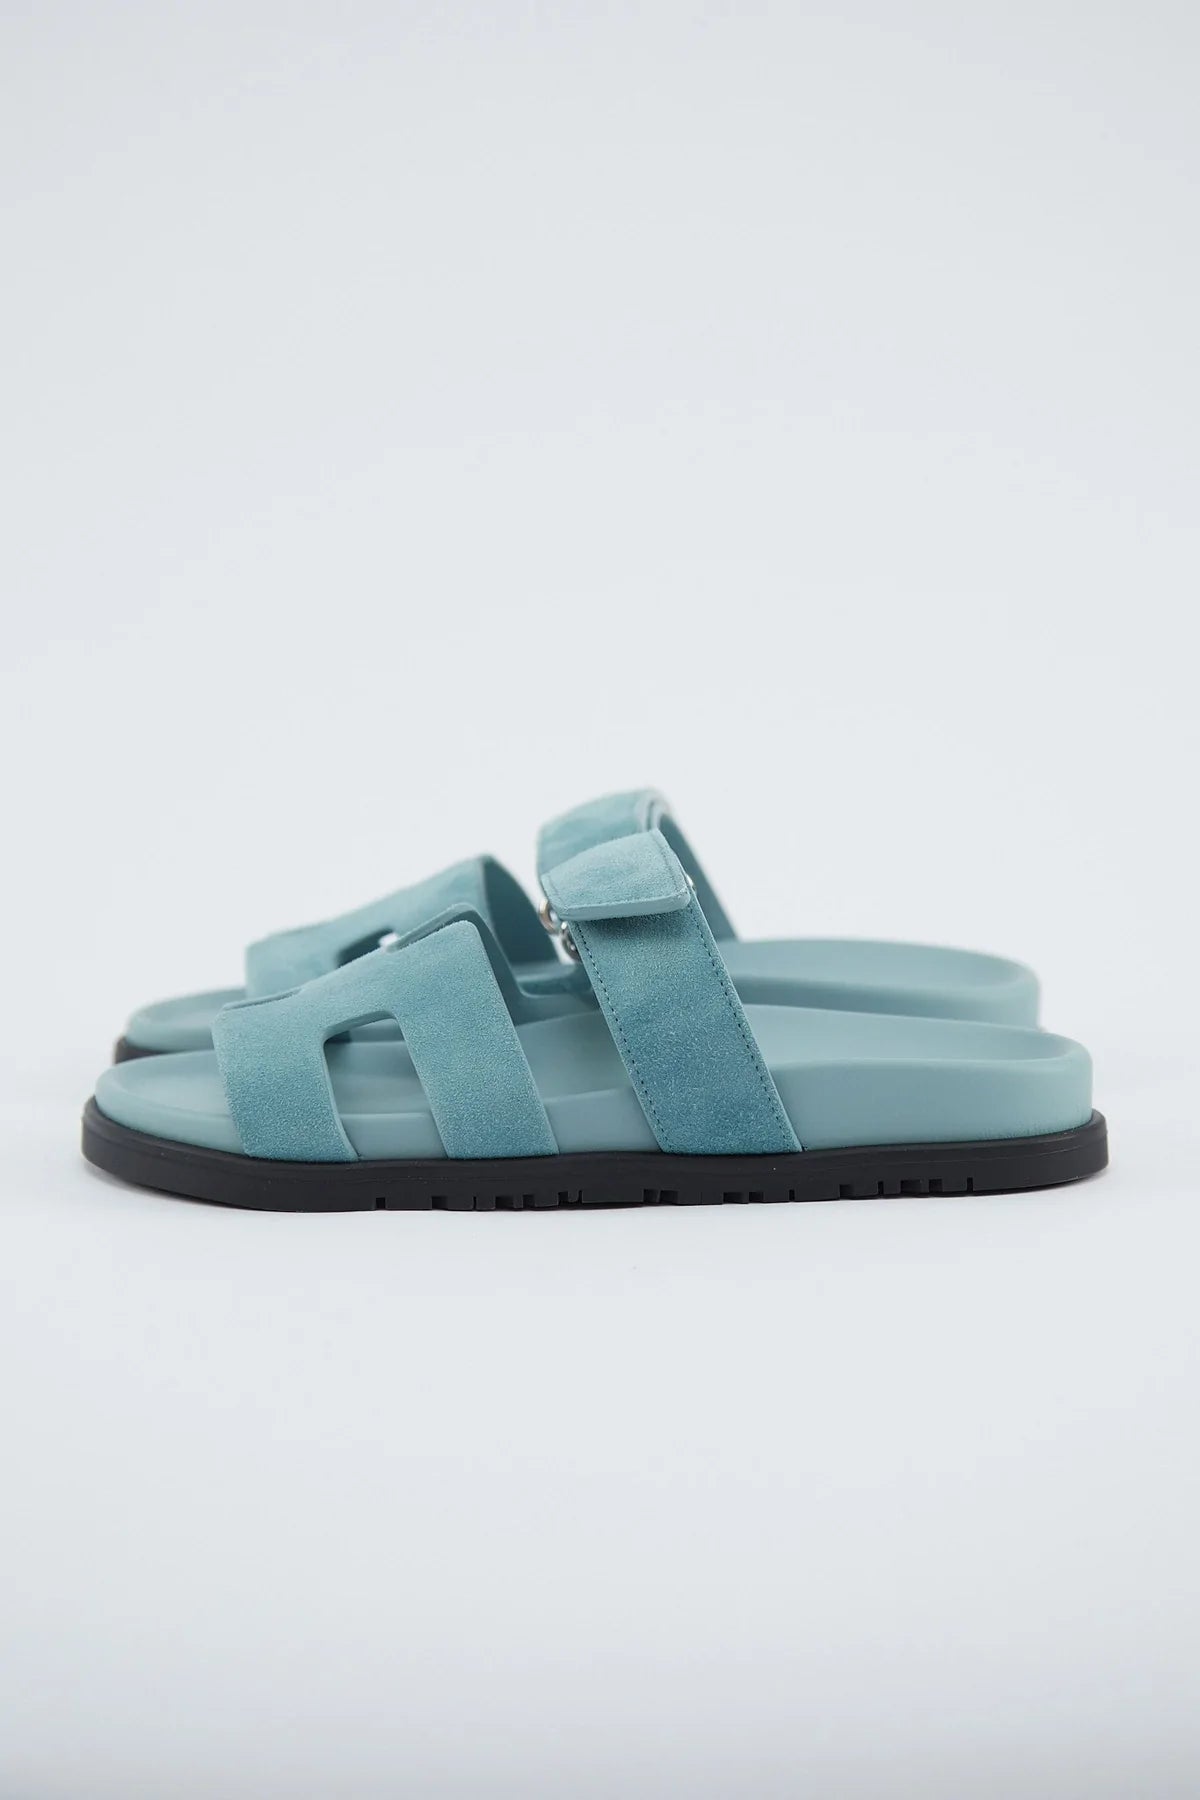 Hermès Chypre Sandals Suede (Vert D’eau)